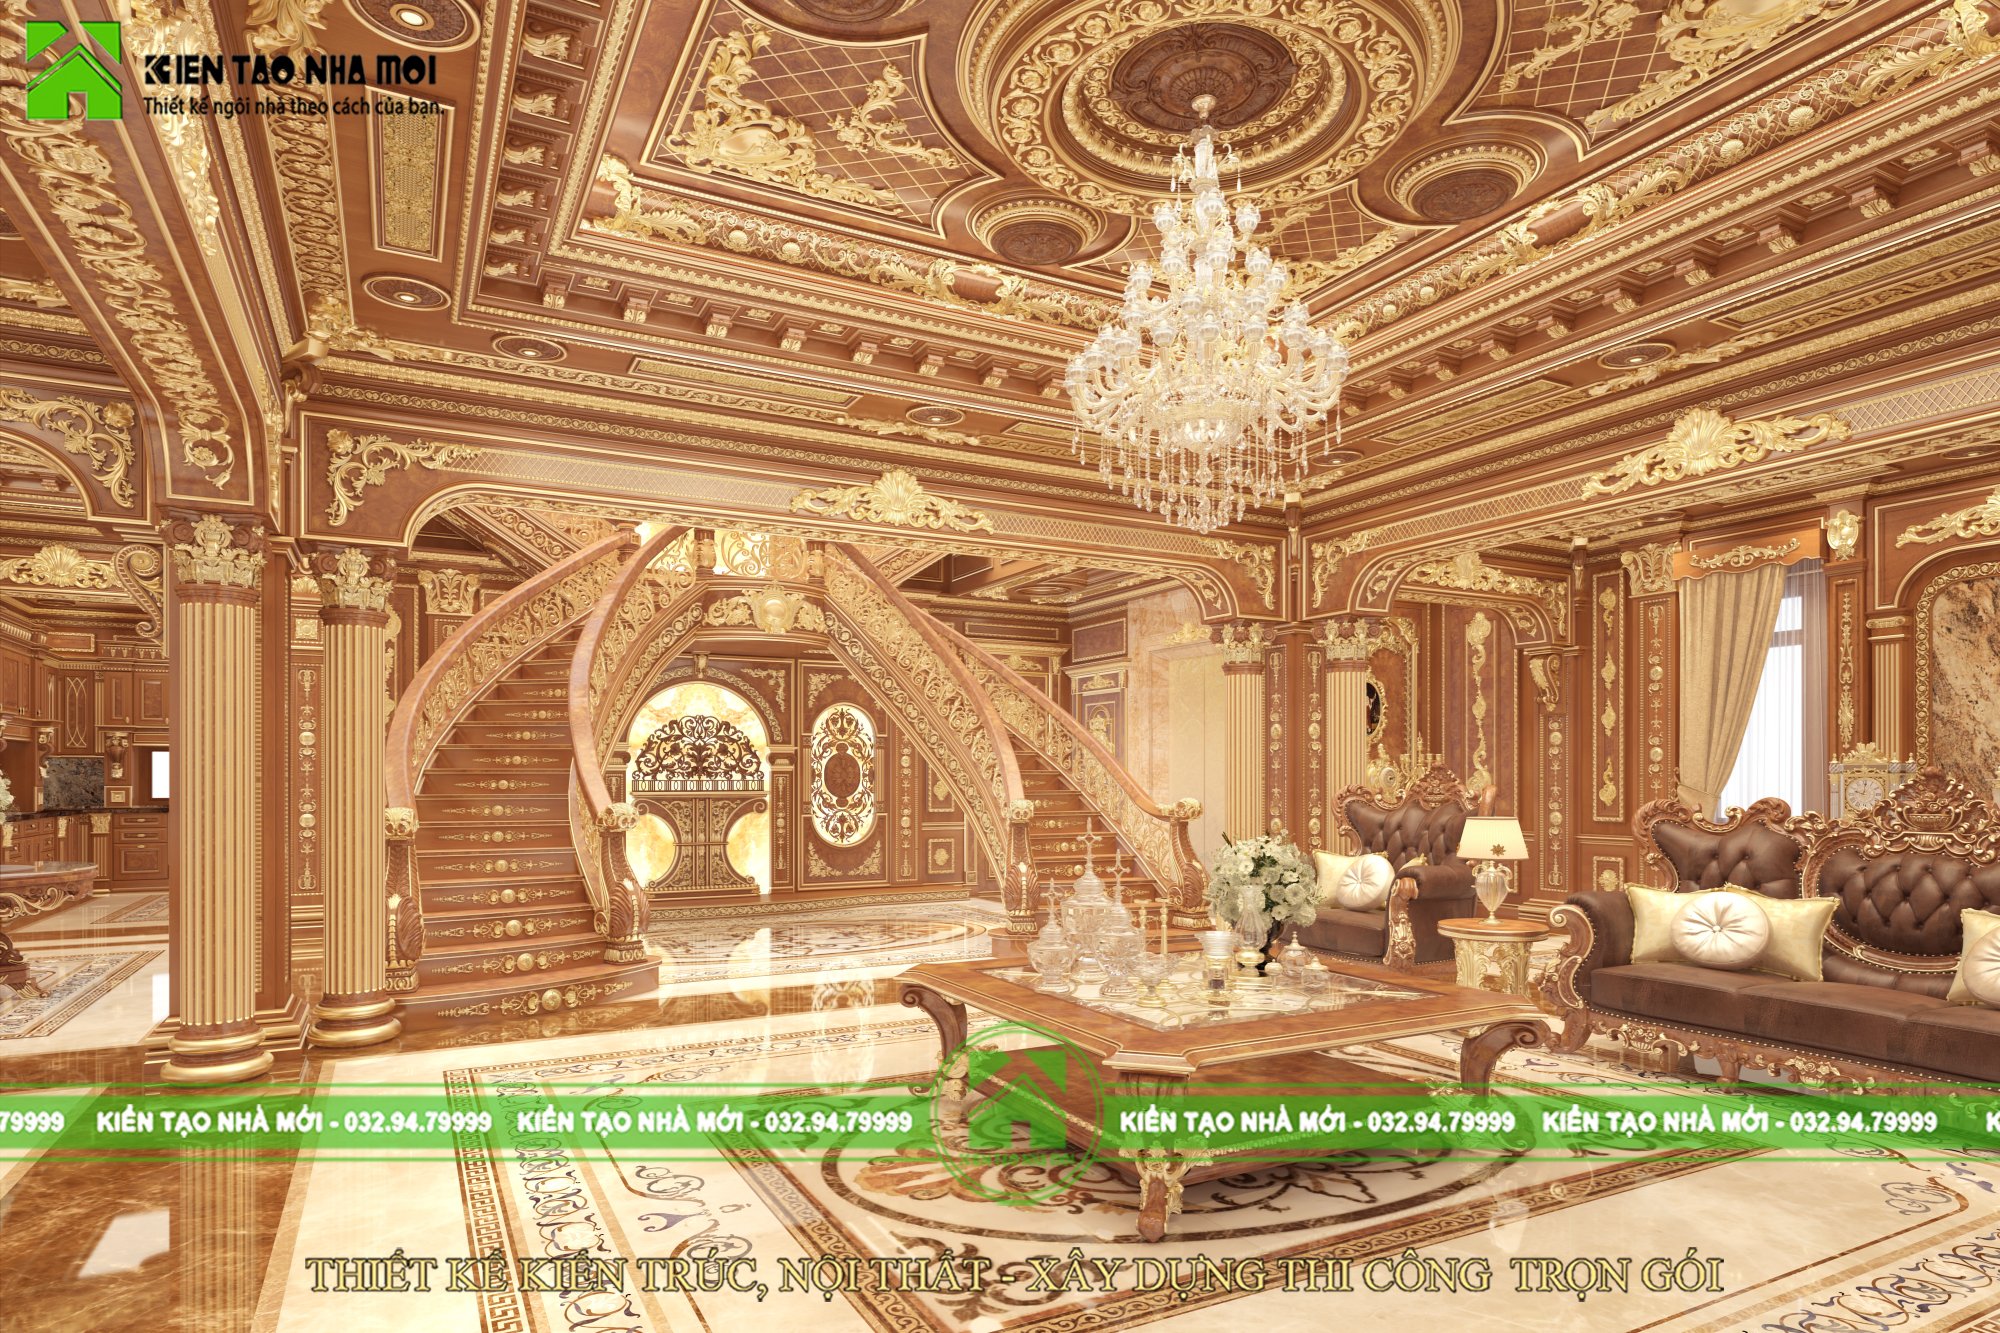 Thiết kế nội thất Biệt Thự tại Lâm Đồng THIẾT KẾ NỘI THẤT LÂU ĐÀI CỔ ĐIỂN ĐẸP, ẤN TƯỢNG TẠI ĐÀ LẠT NT1857 1589895550 4